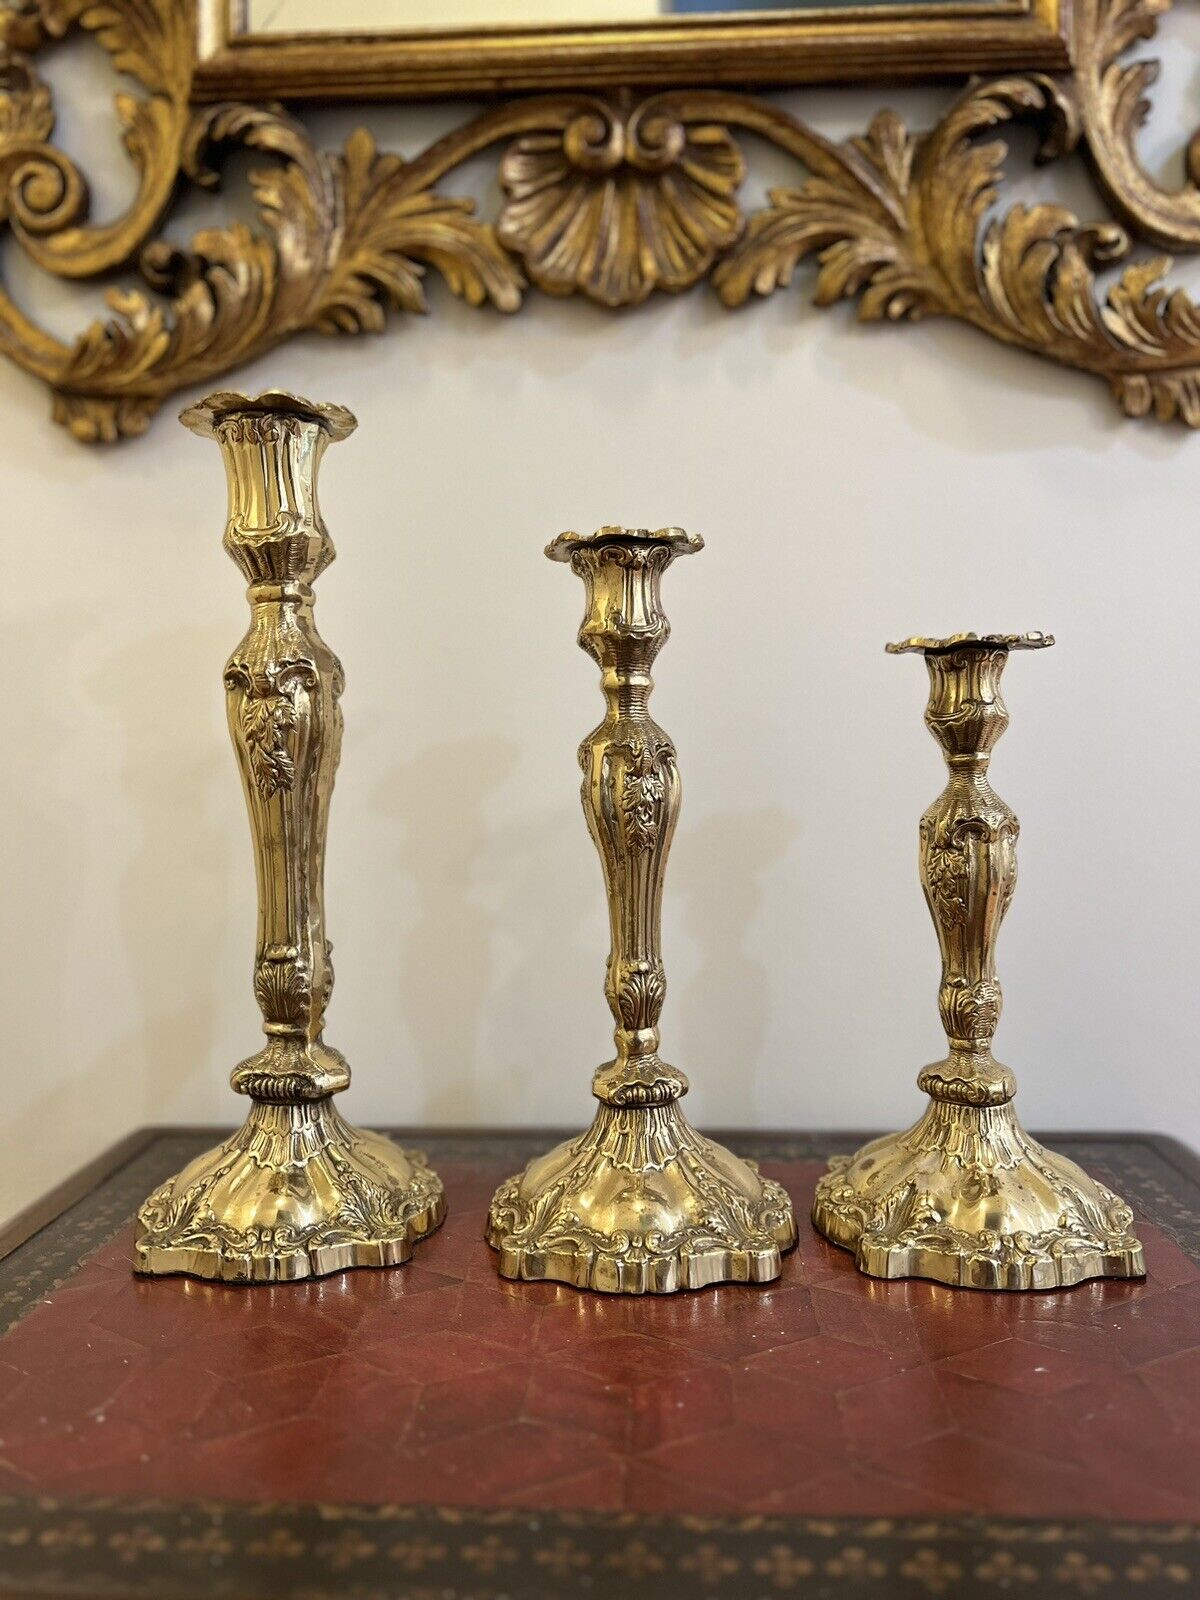 Large Ornate Brass Candle Stick Holders Decorative Floral Leaf Design Vintage